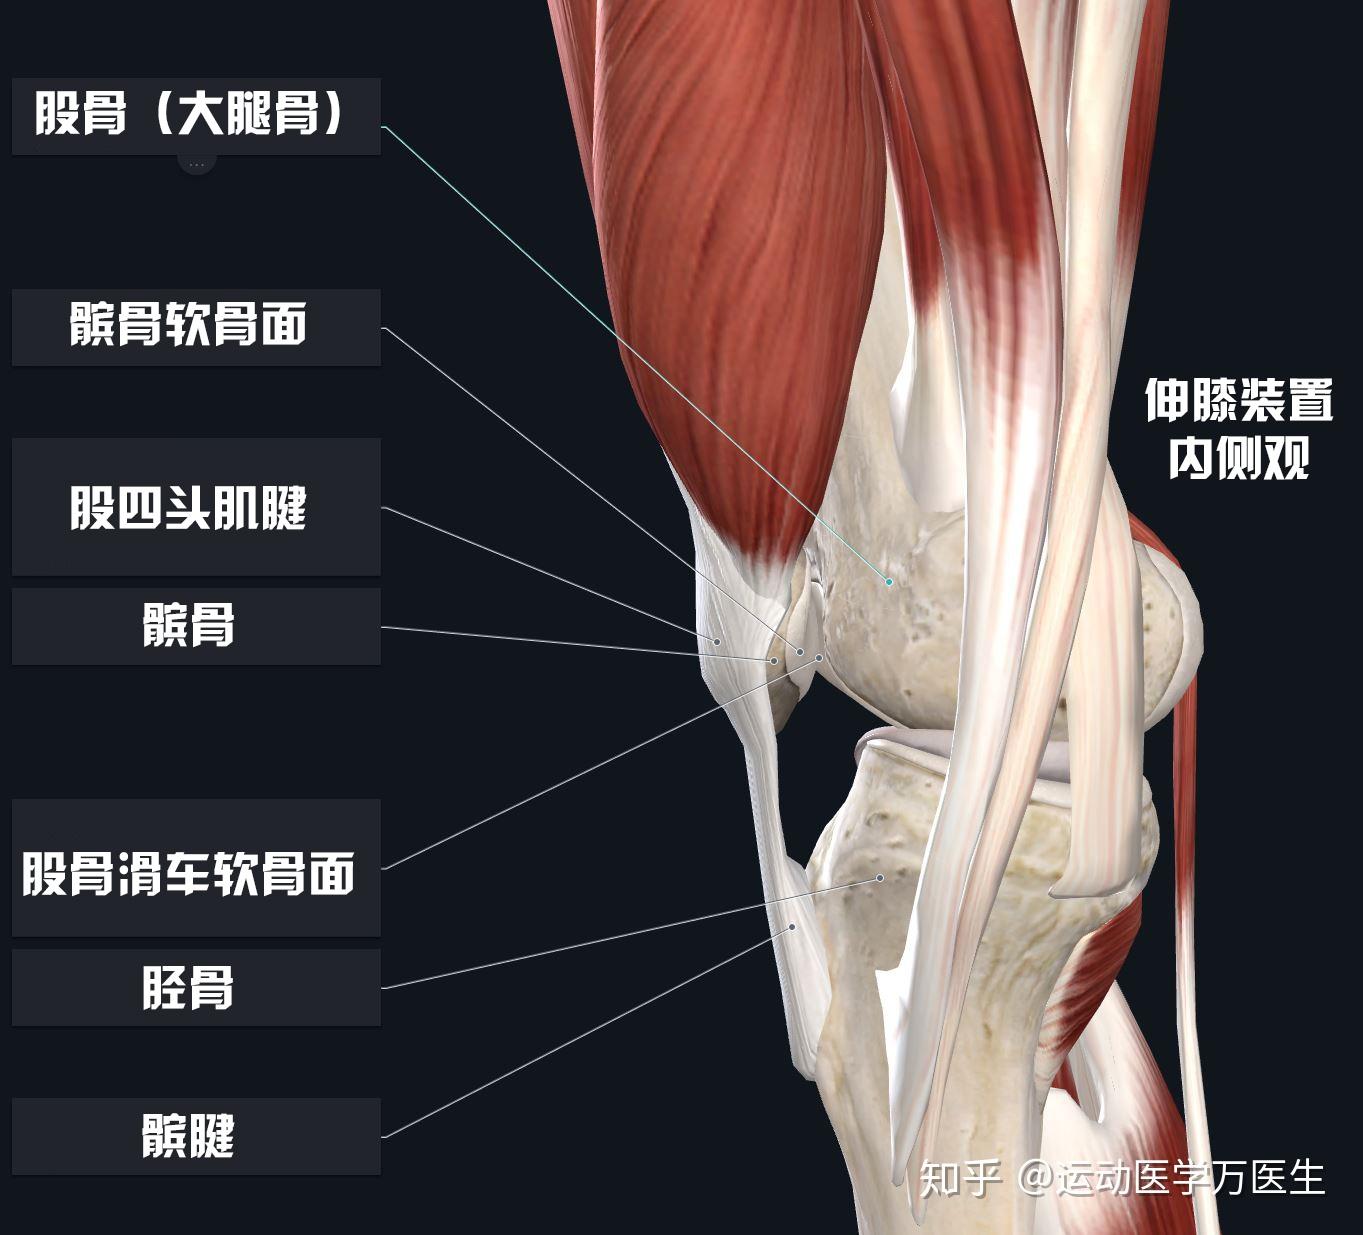 85 赞同 · 14 评论文章在膝关节,股四头肌腱将大腿前方的股四头肌